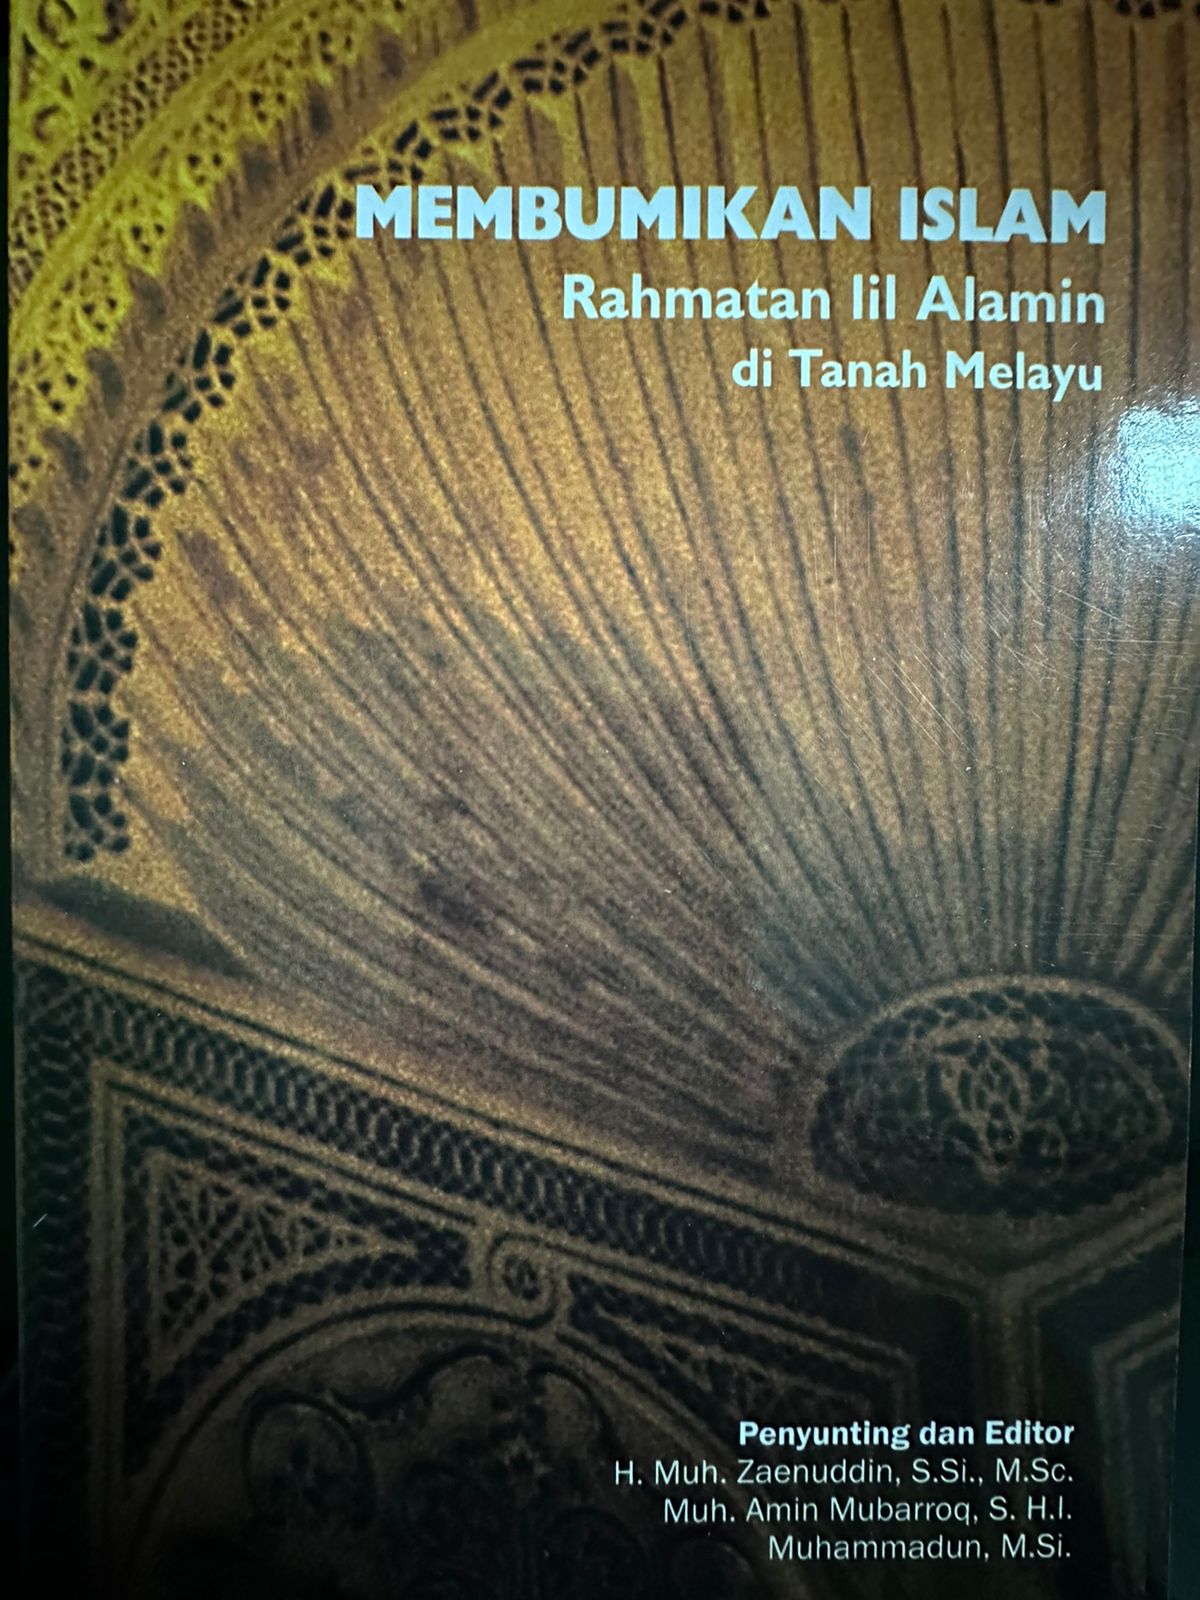 Membumikan islam rahmatan lil alamin di tanah melayu :  (kumpulan cermah tentang "kajian aswaja" rmadhan 1436H di Batam TV